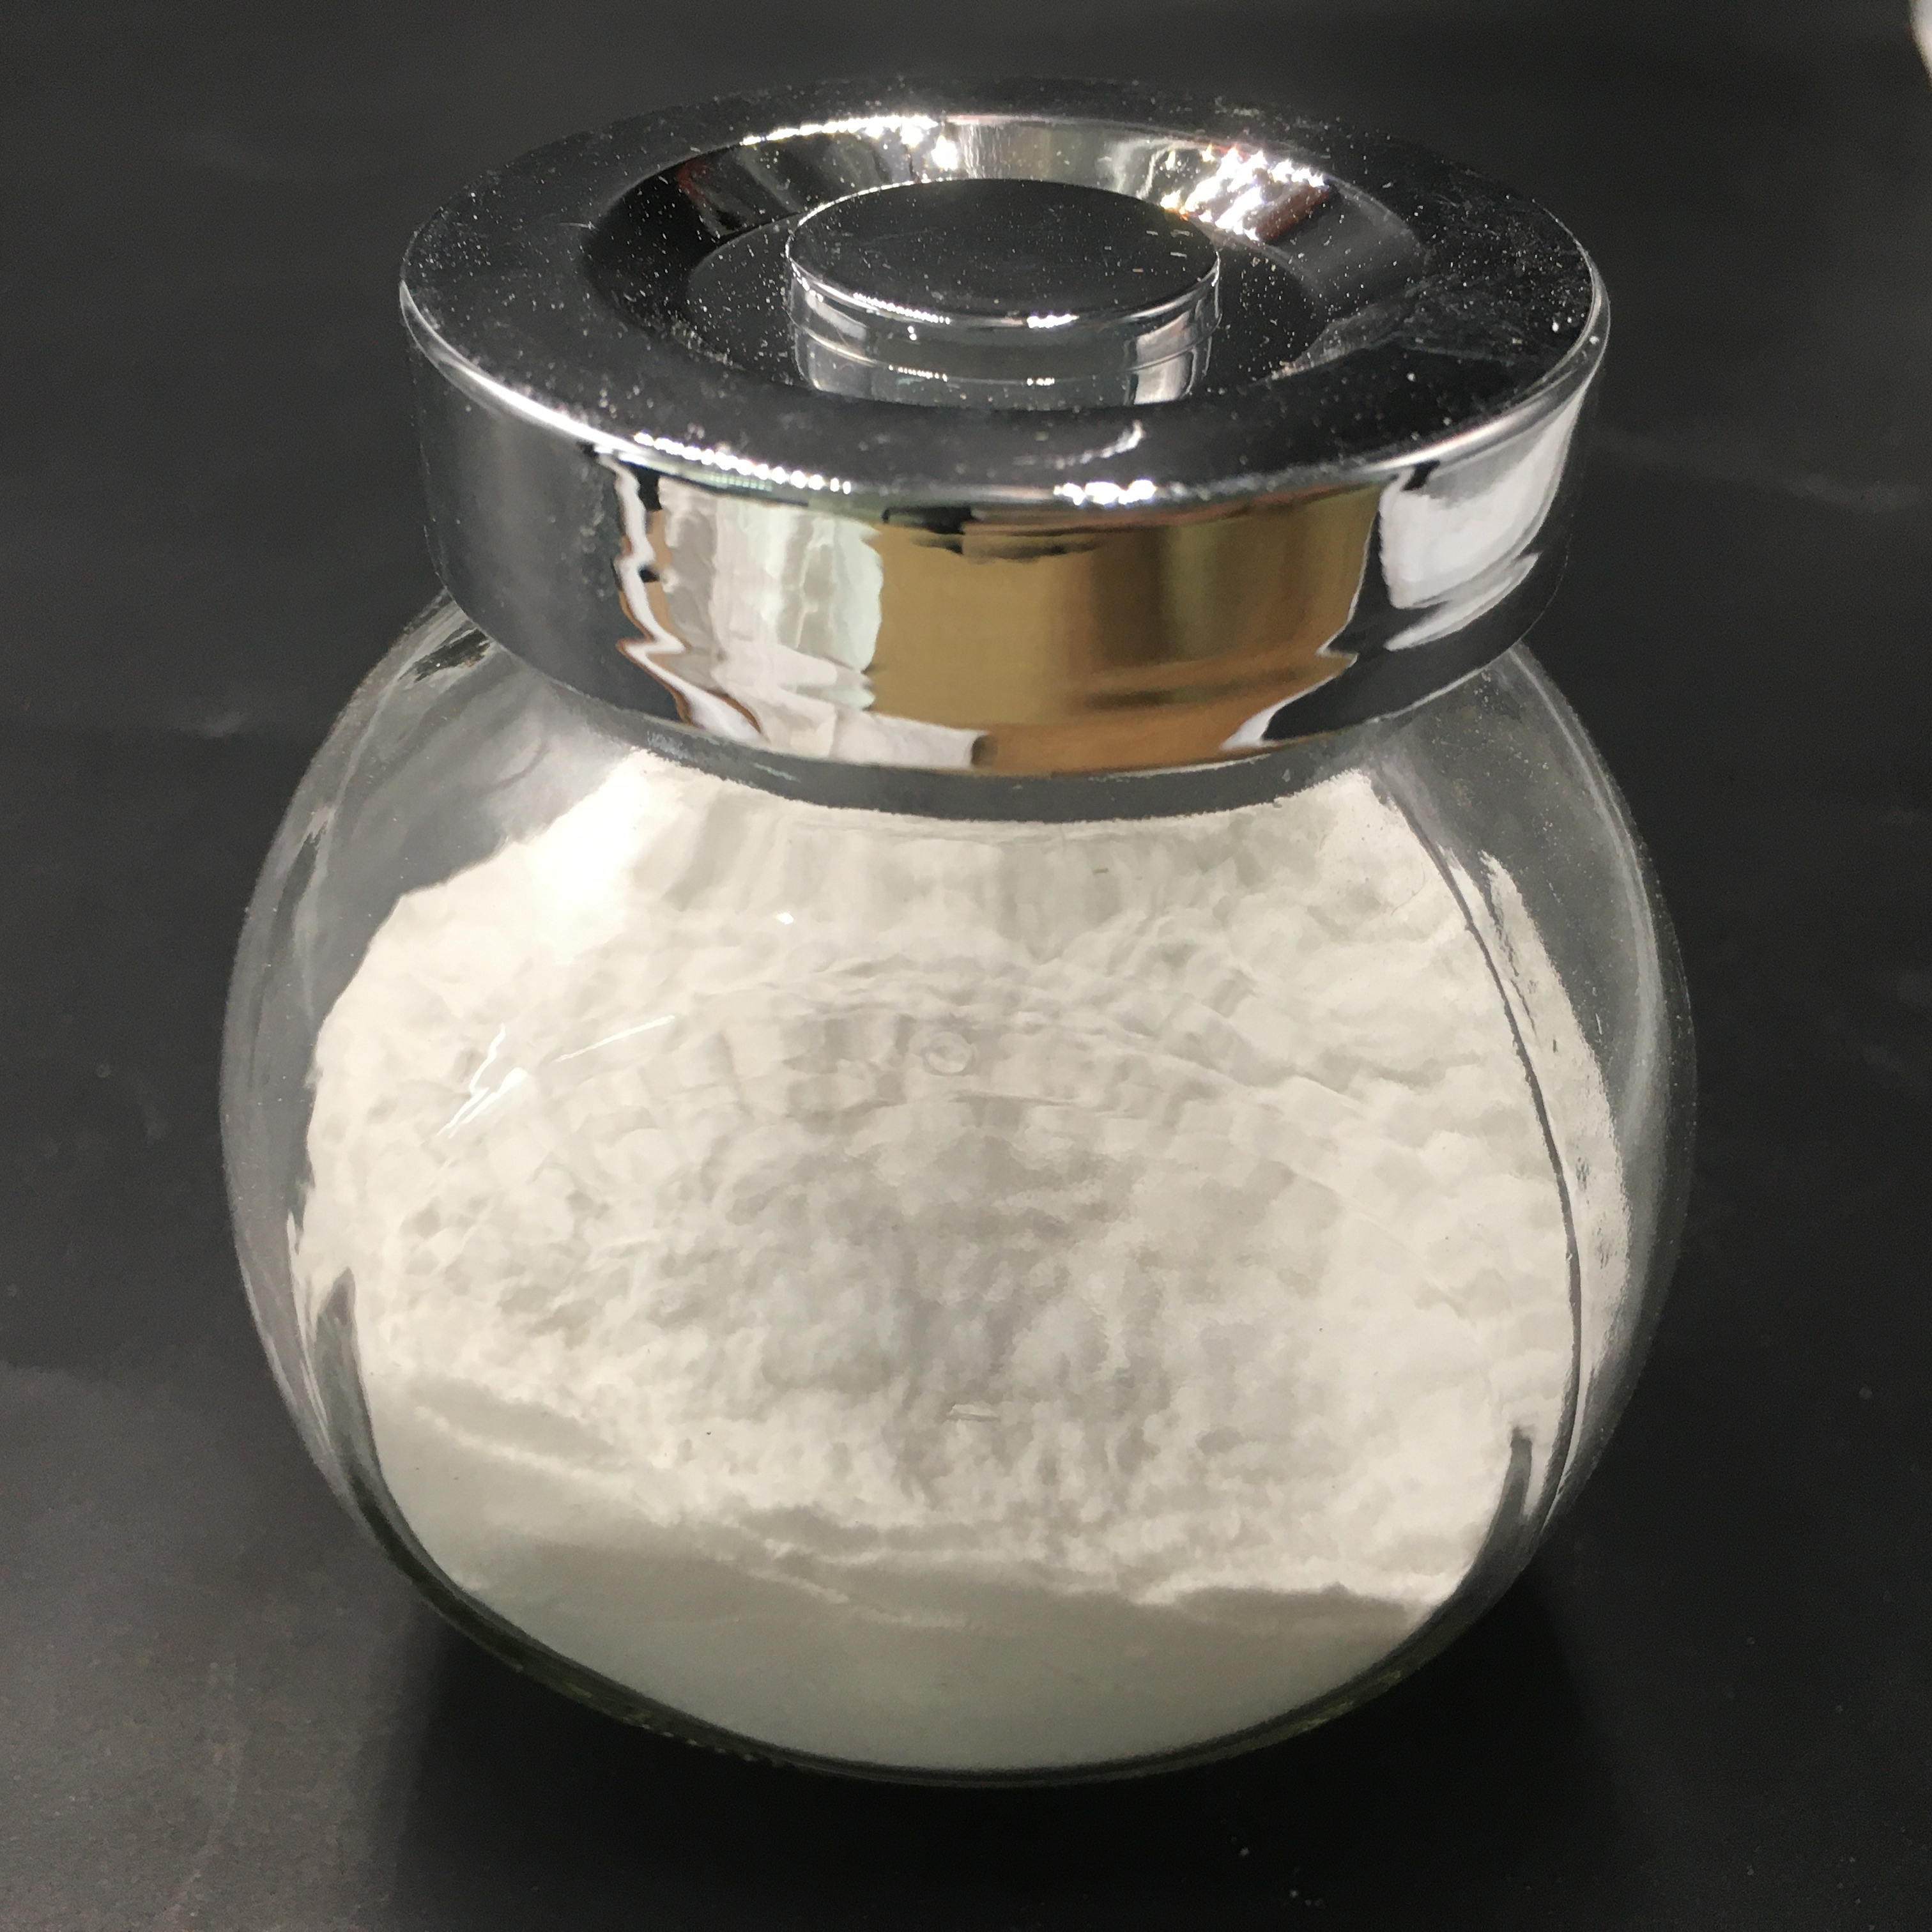 Bicarbonato de sodio industrial bicarbonato de sodio en polvo aditivo alimentario precio pasta de dientes